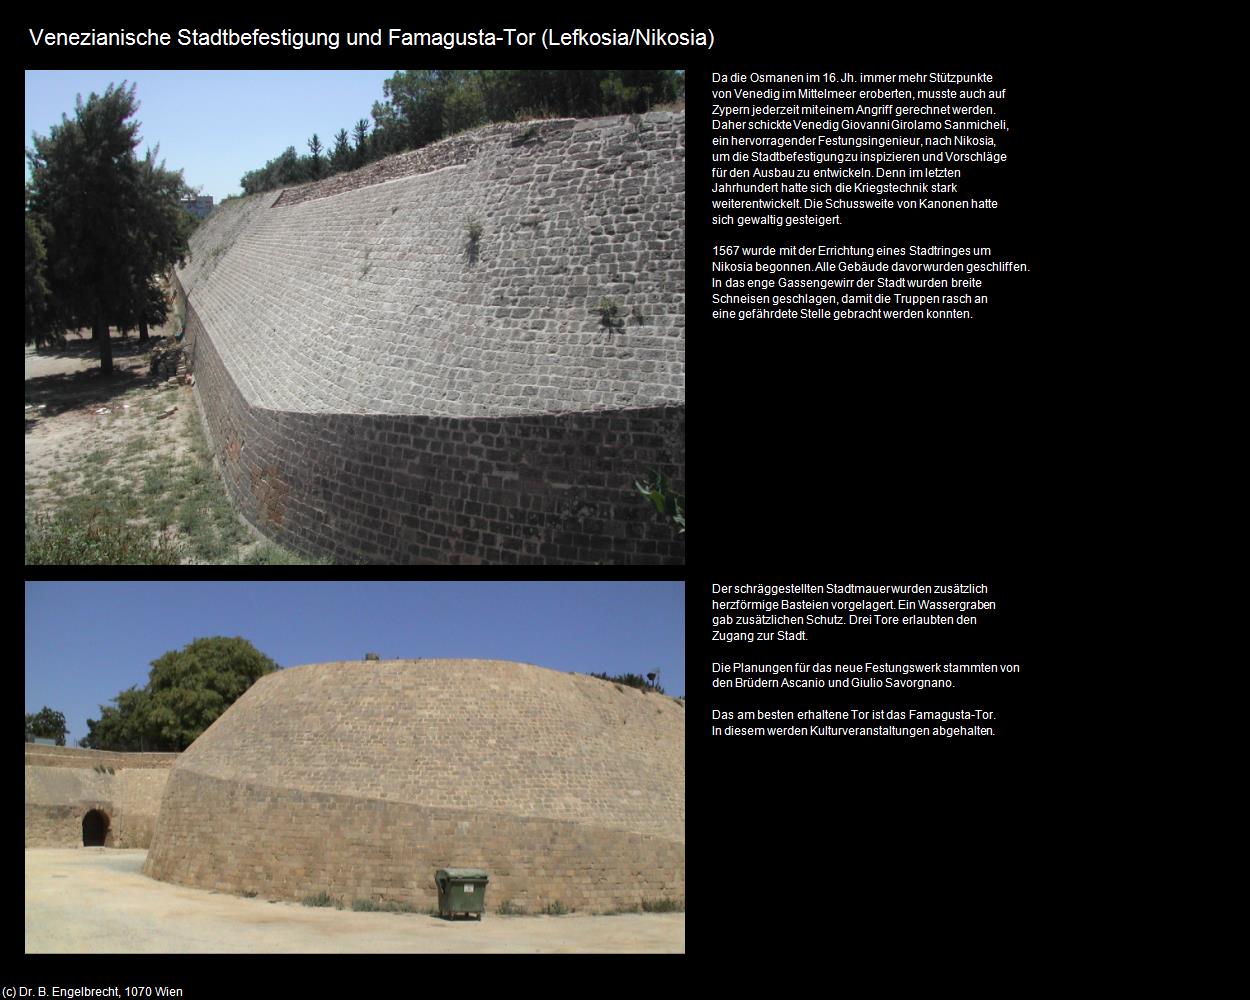 Venezianische Stadtbefestigung und Famagusta-Tor (Lefkosia-Nikosia/CY) in ZYPERN-Insel der Aphrodite